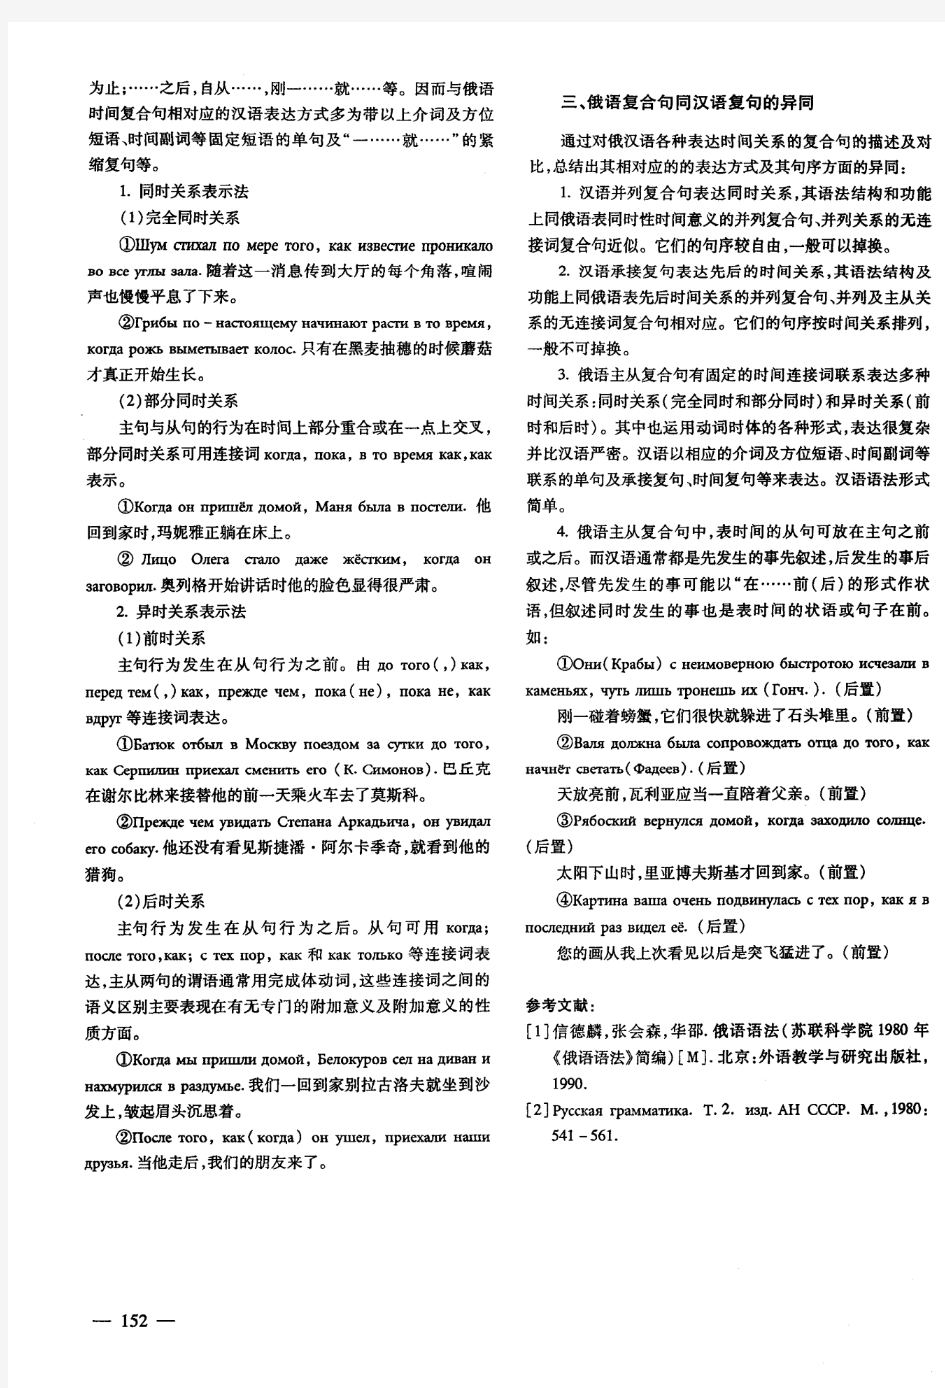 俄语中表时间关系的复合句分类以及与汉语复句的对比